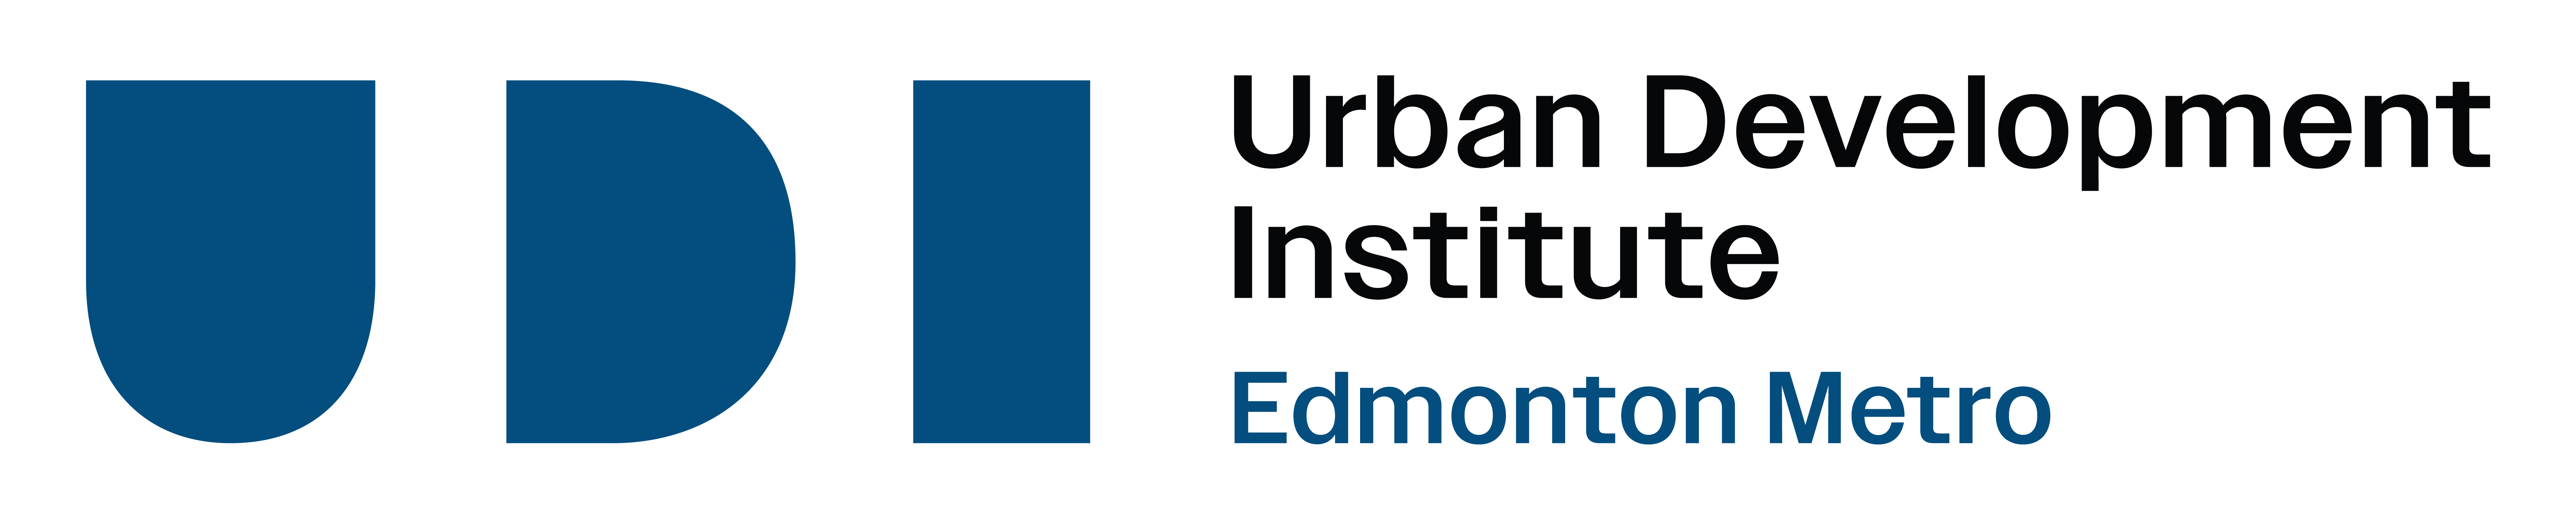 Urban Development Institute Edmonton Metro